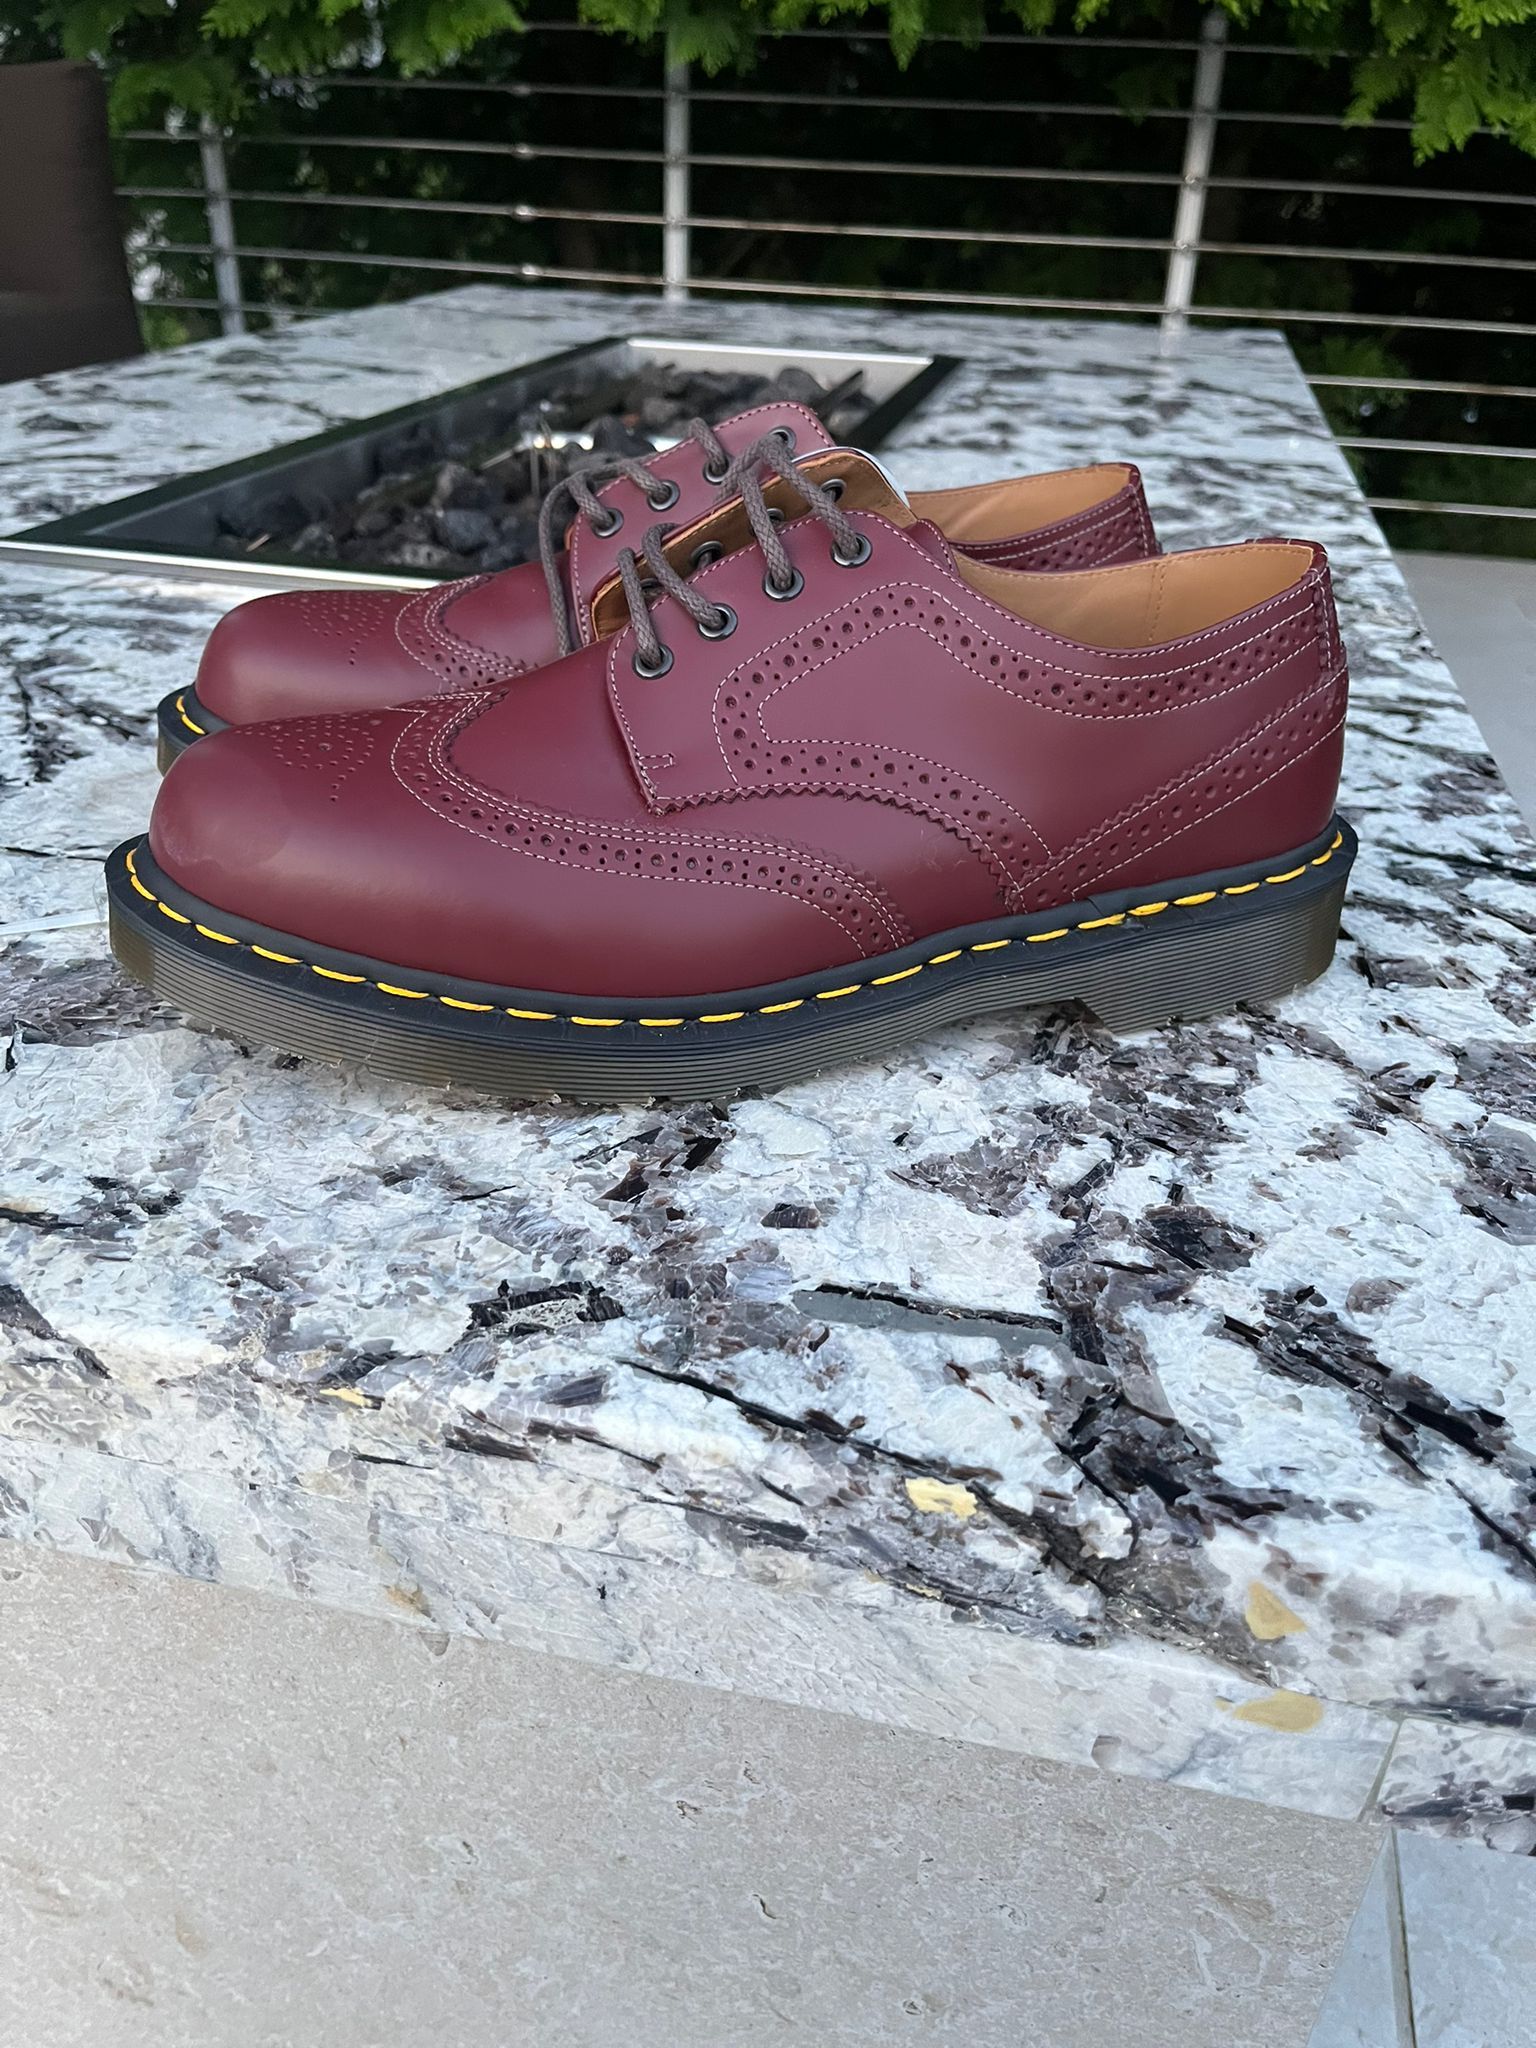 Comme des Garcons CDG x Dr Martens Derby Shoes in Bordeaux | Grailed